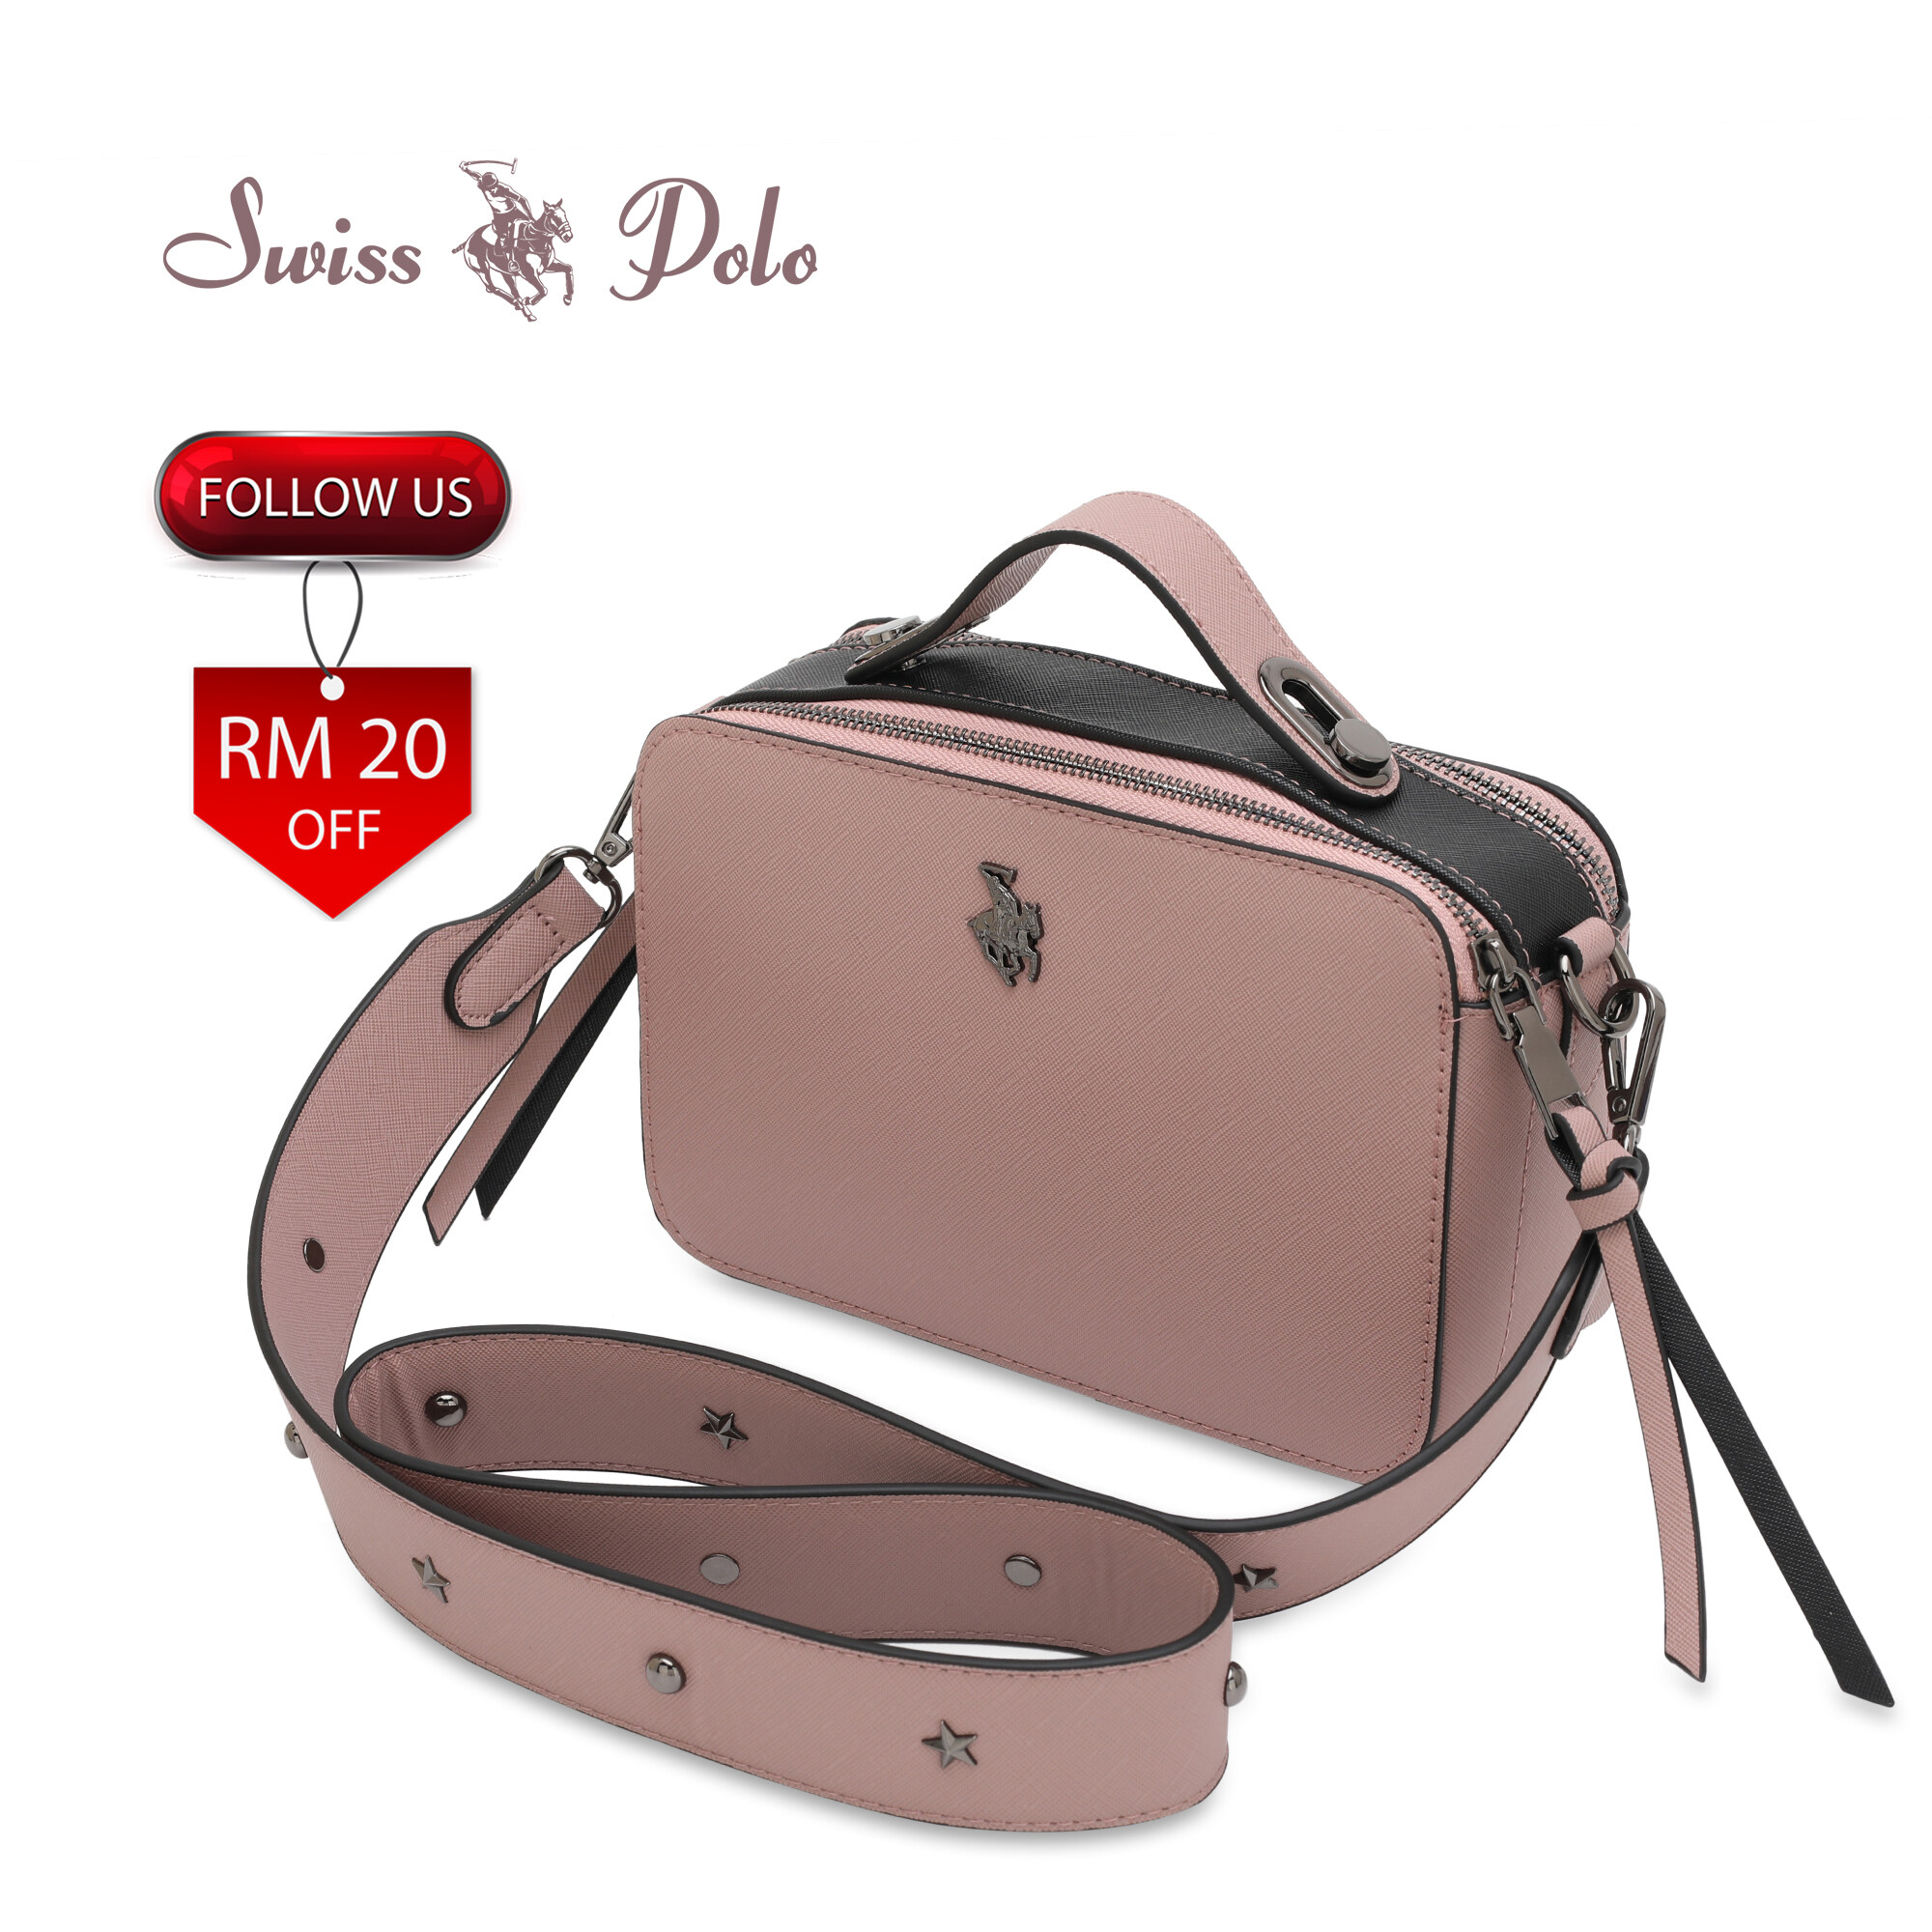 SWISS POLO Ladies Top Handle Sling Bag HFP 1650-2 PINK